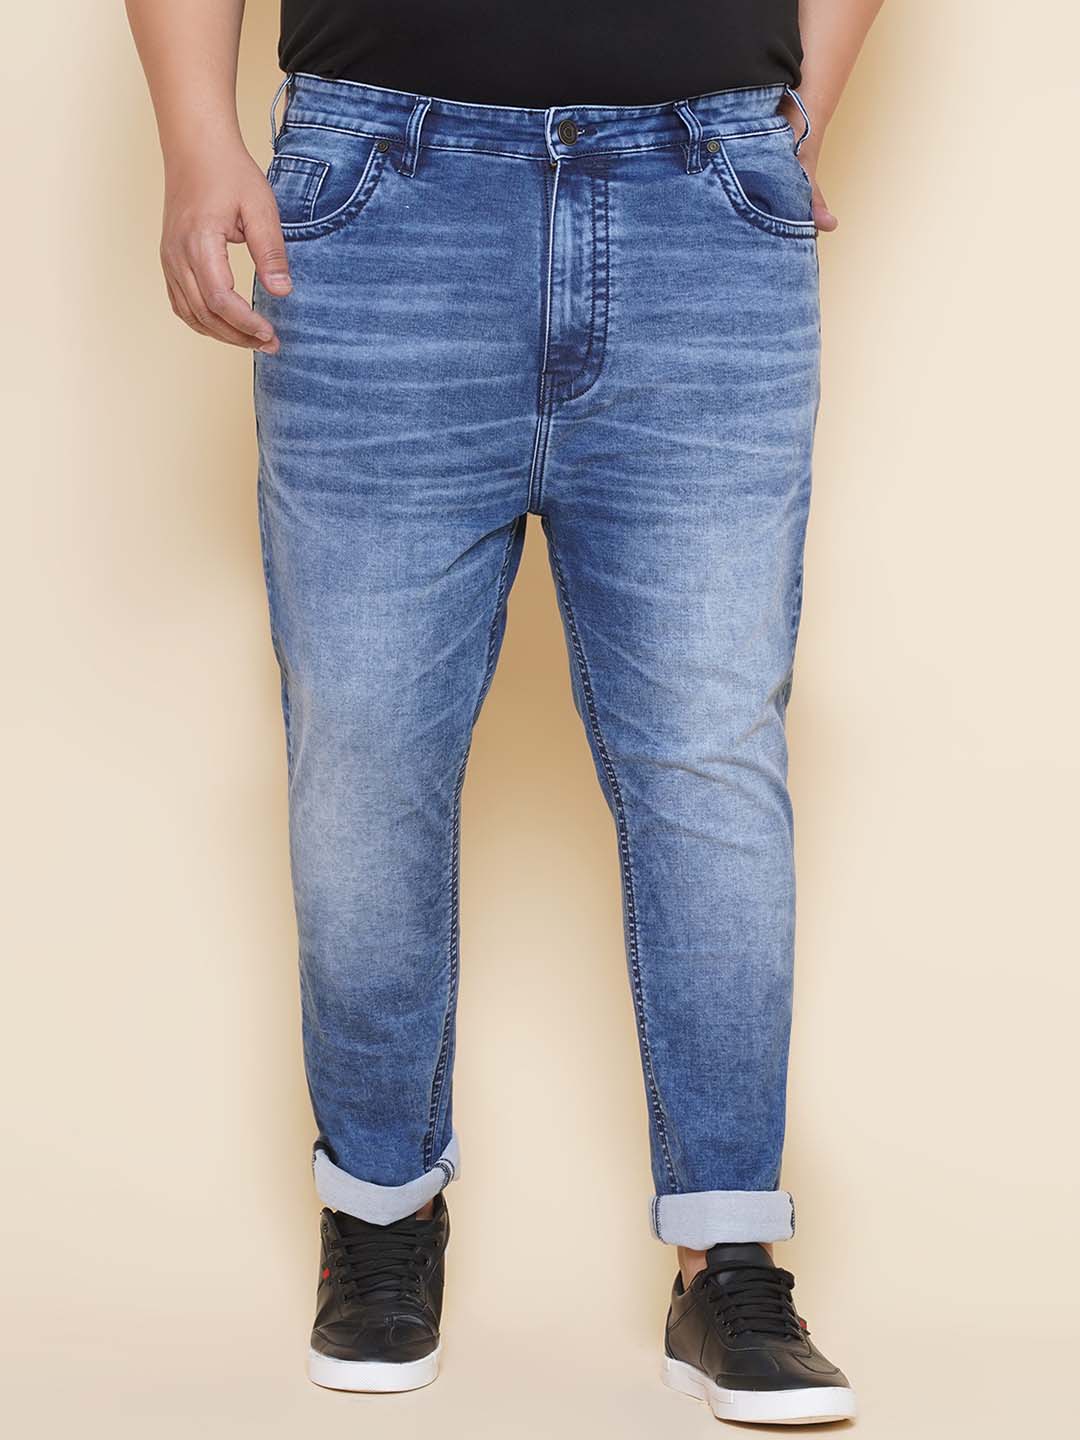 bottomwear/jeans/JPJ12427/jpj12427-1.jpg